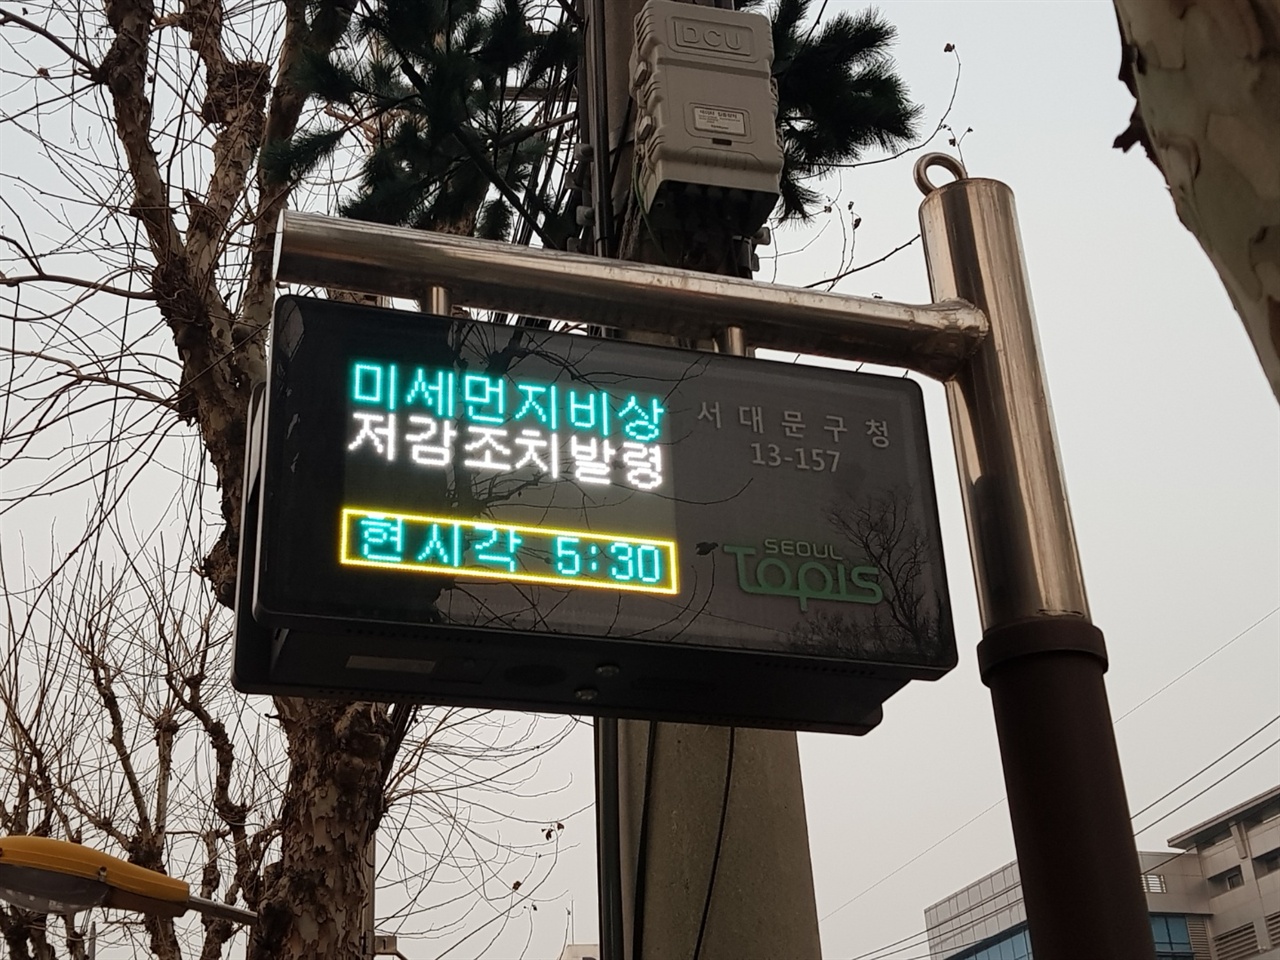 미세먼지 저감조치 발령이 내려진 17일 서울시내의 버스 BIT(Bus Information Terminal)에서 대중교통 무료 정책을 안내하고 있다. 